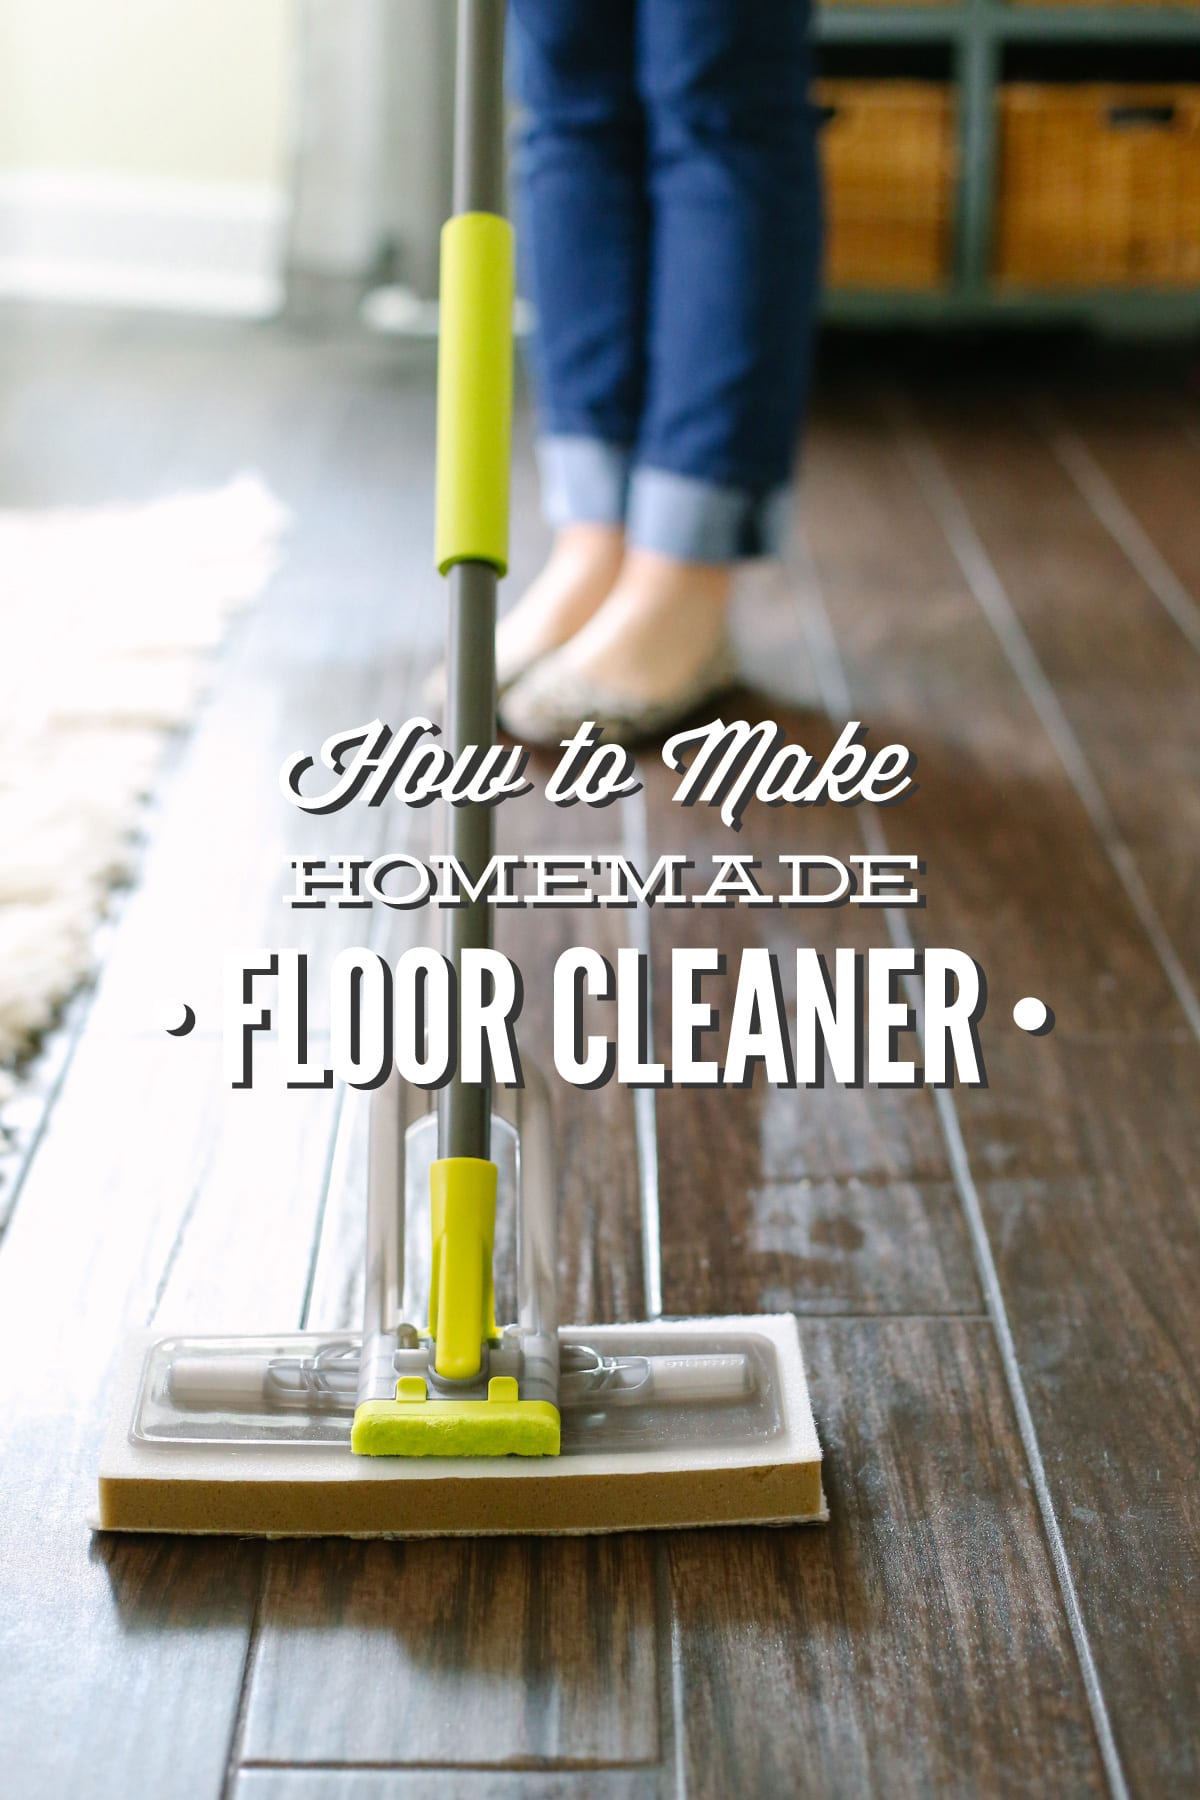 How to Make Homemade Floor Cleaner (Vinegar-Based)